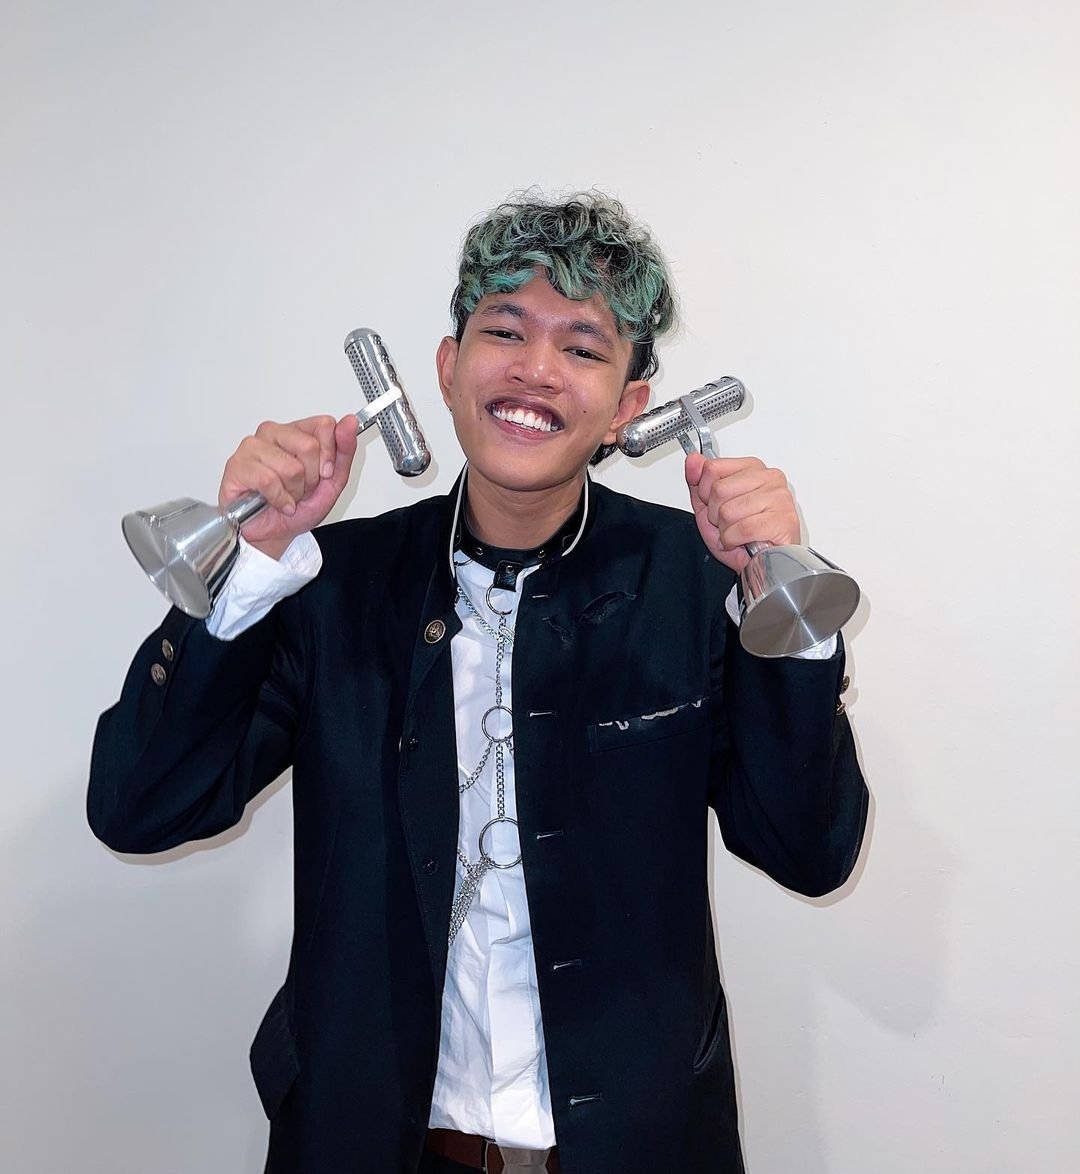 Yonnyboii tidak menyangka akan memenangi kategori yang diidamkan oleh setiap penyanyi itu. - Gambar dari Instagram Yonnyboii